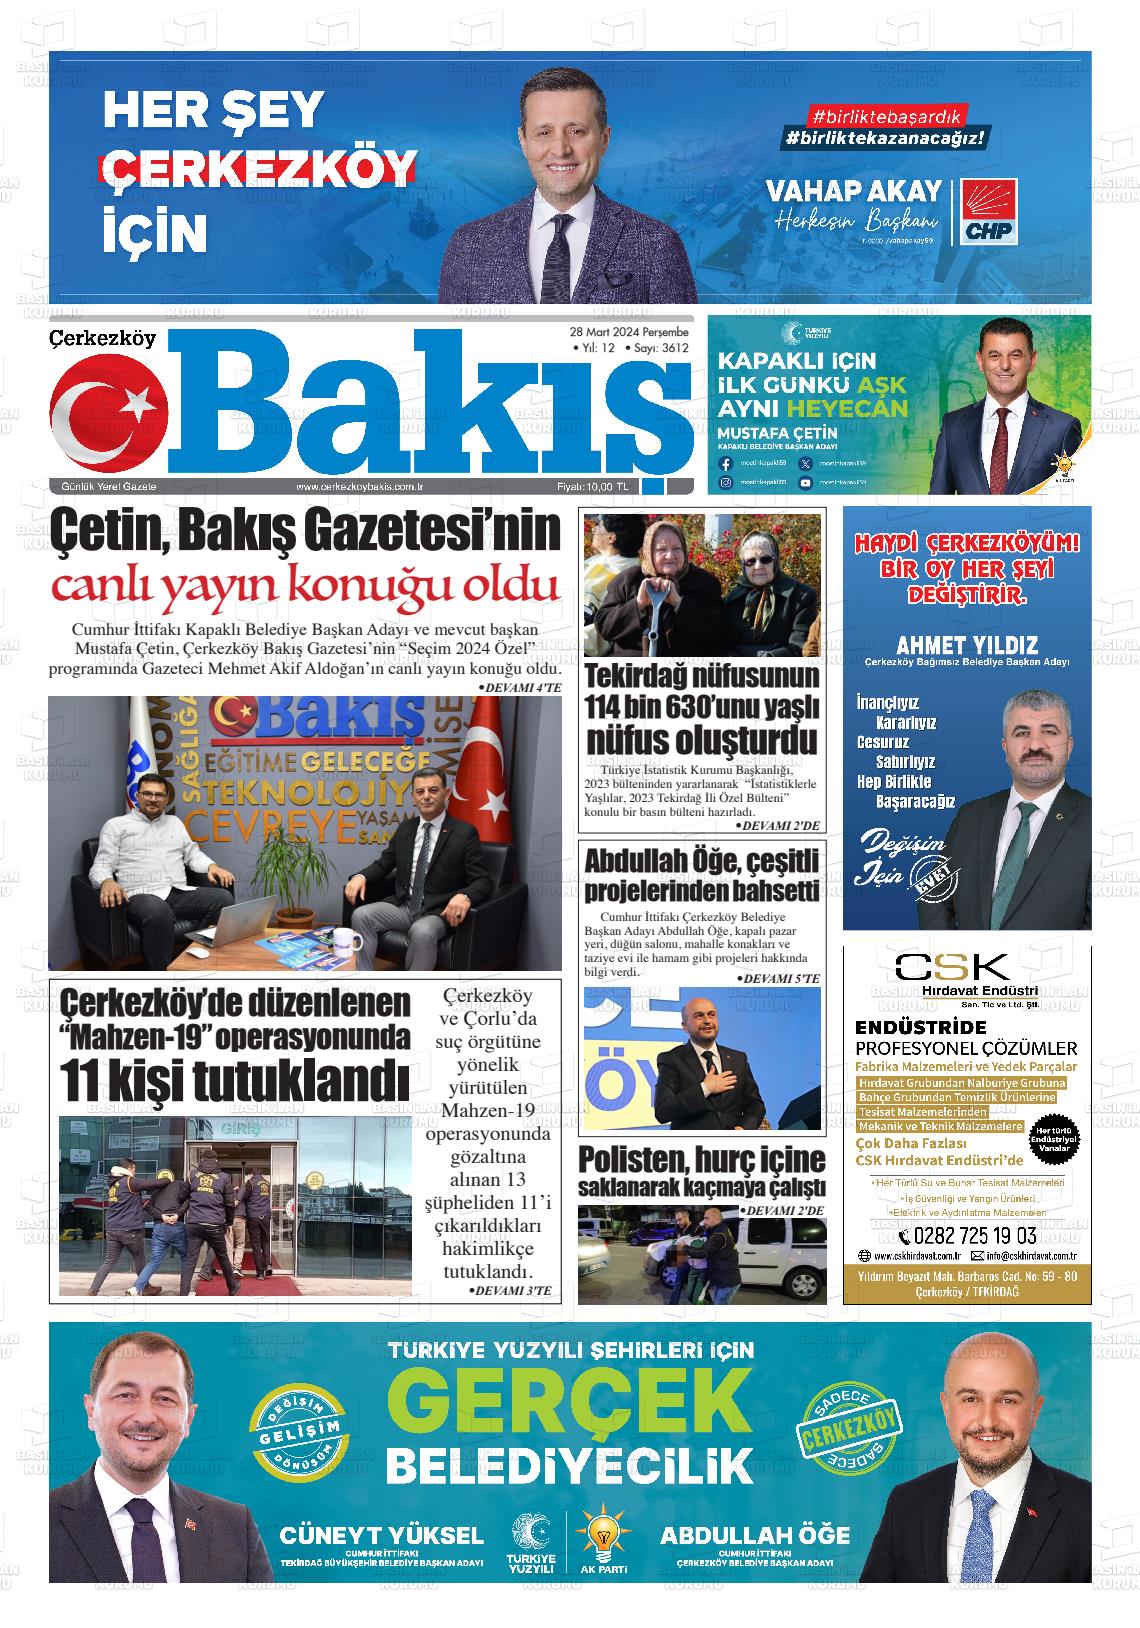 28 Mart 2024 Çerkezköy Bakış Gazete Manşeti